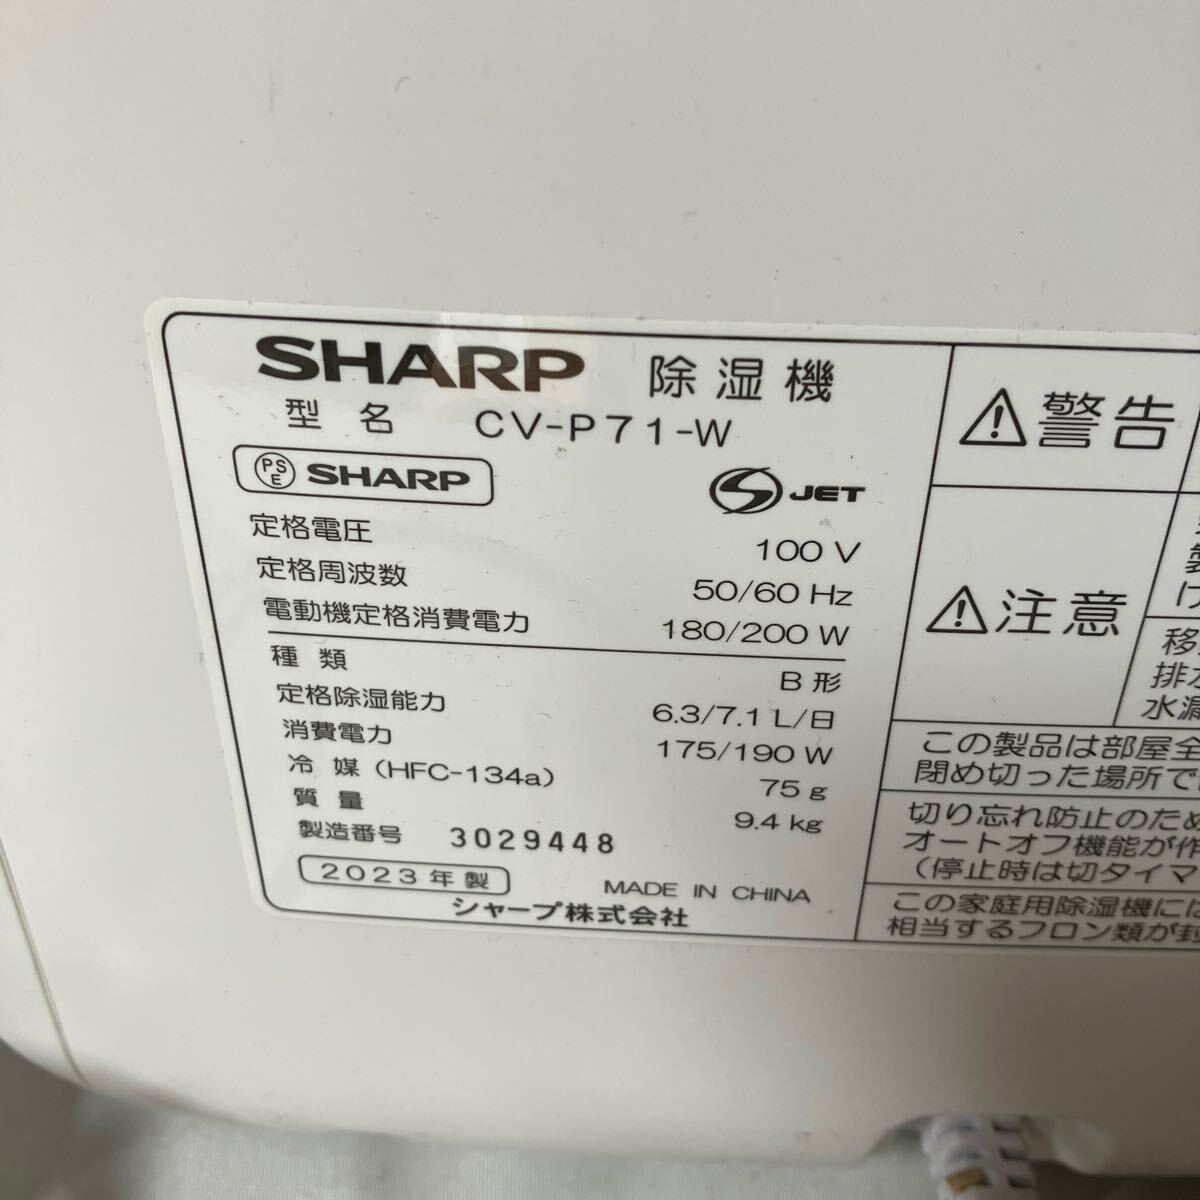 0[500 иен старт ]SHARP sharp осушитель CV-J71-W белый одежда сухой 2023 год производства прекрасный товар 